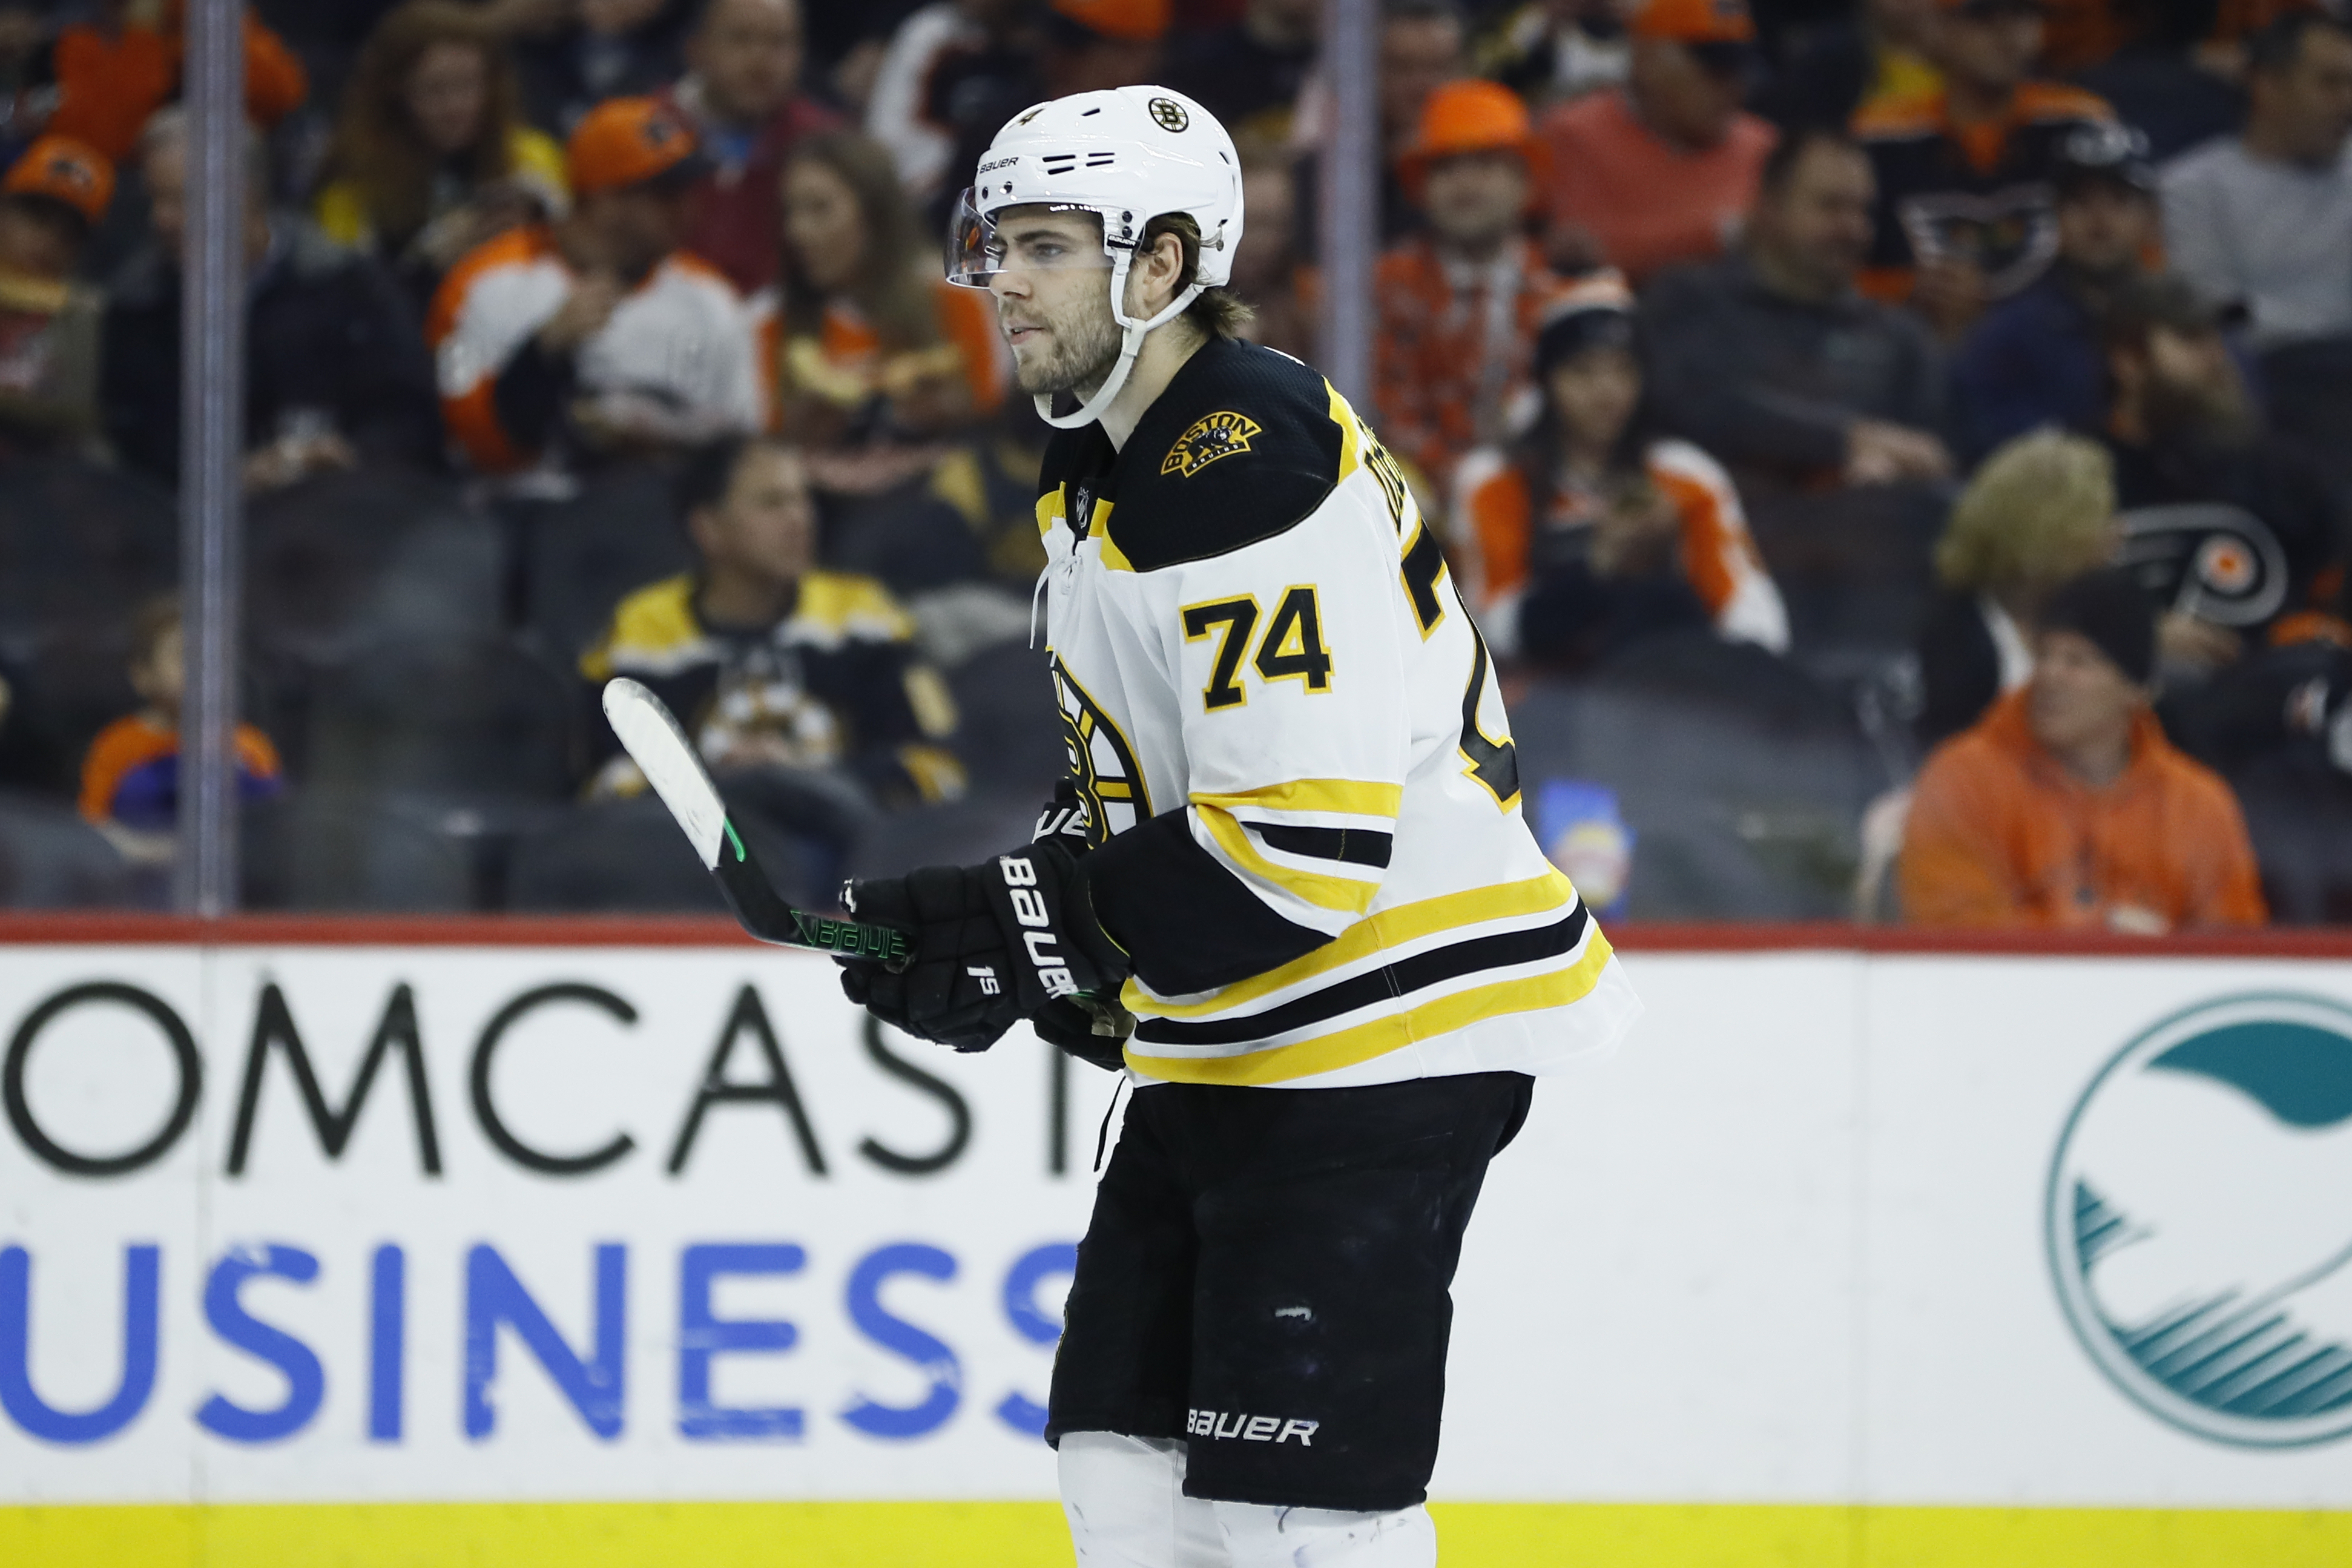 Spotlight doesn't faze Bruins rookie Jake DeBrusk